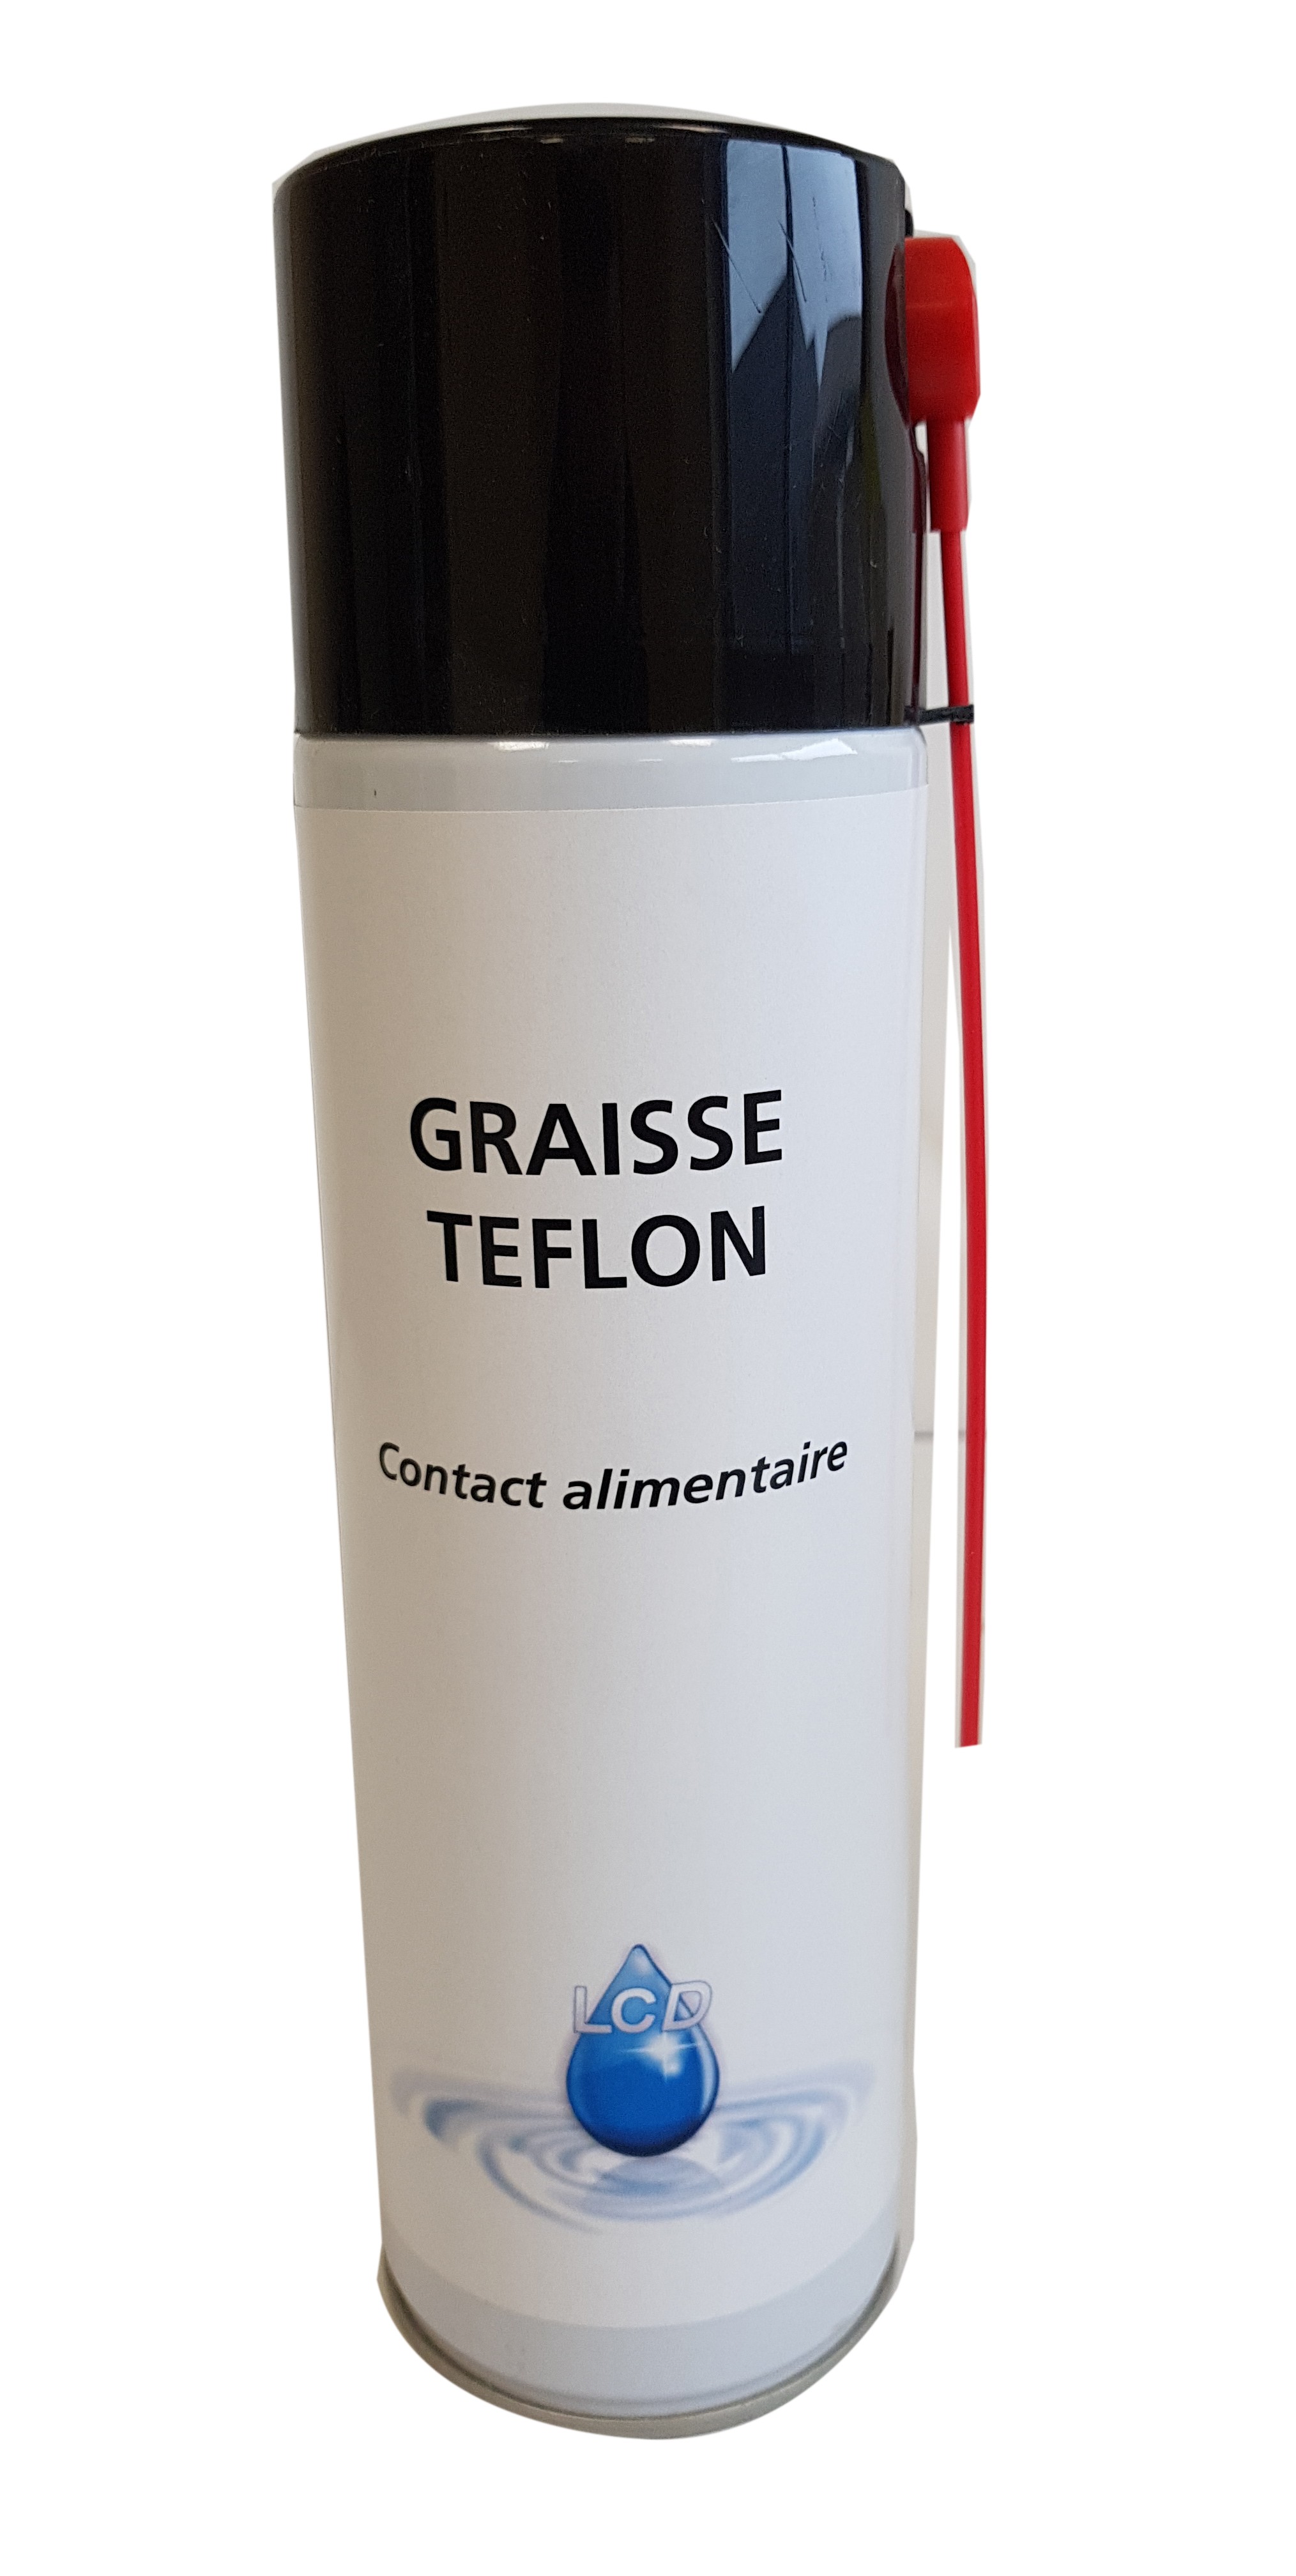 https://www.lubrifiantschimiediffusion.fr/1808/graisse-au-teflon.jpg